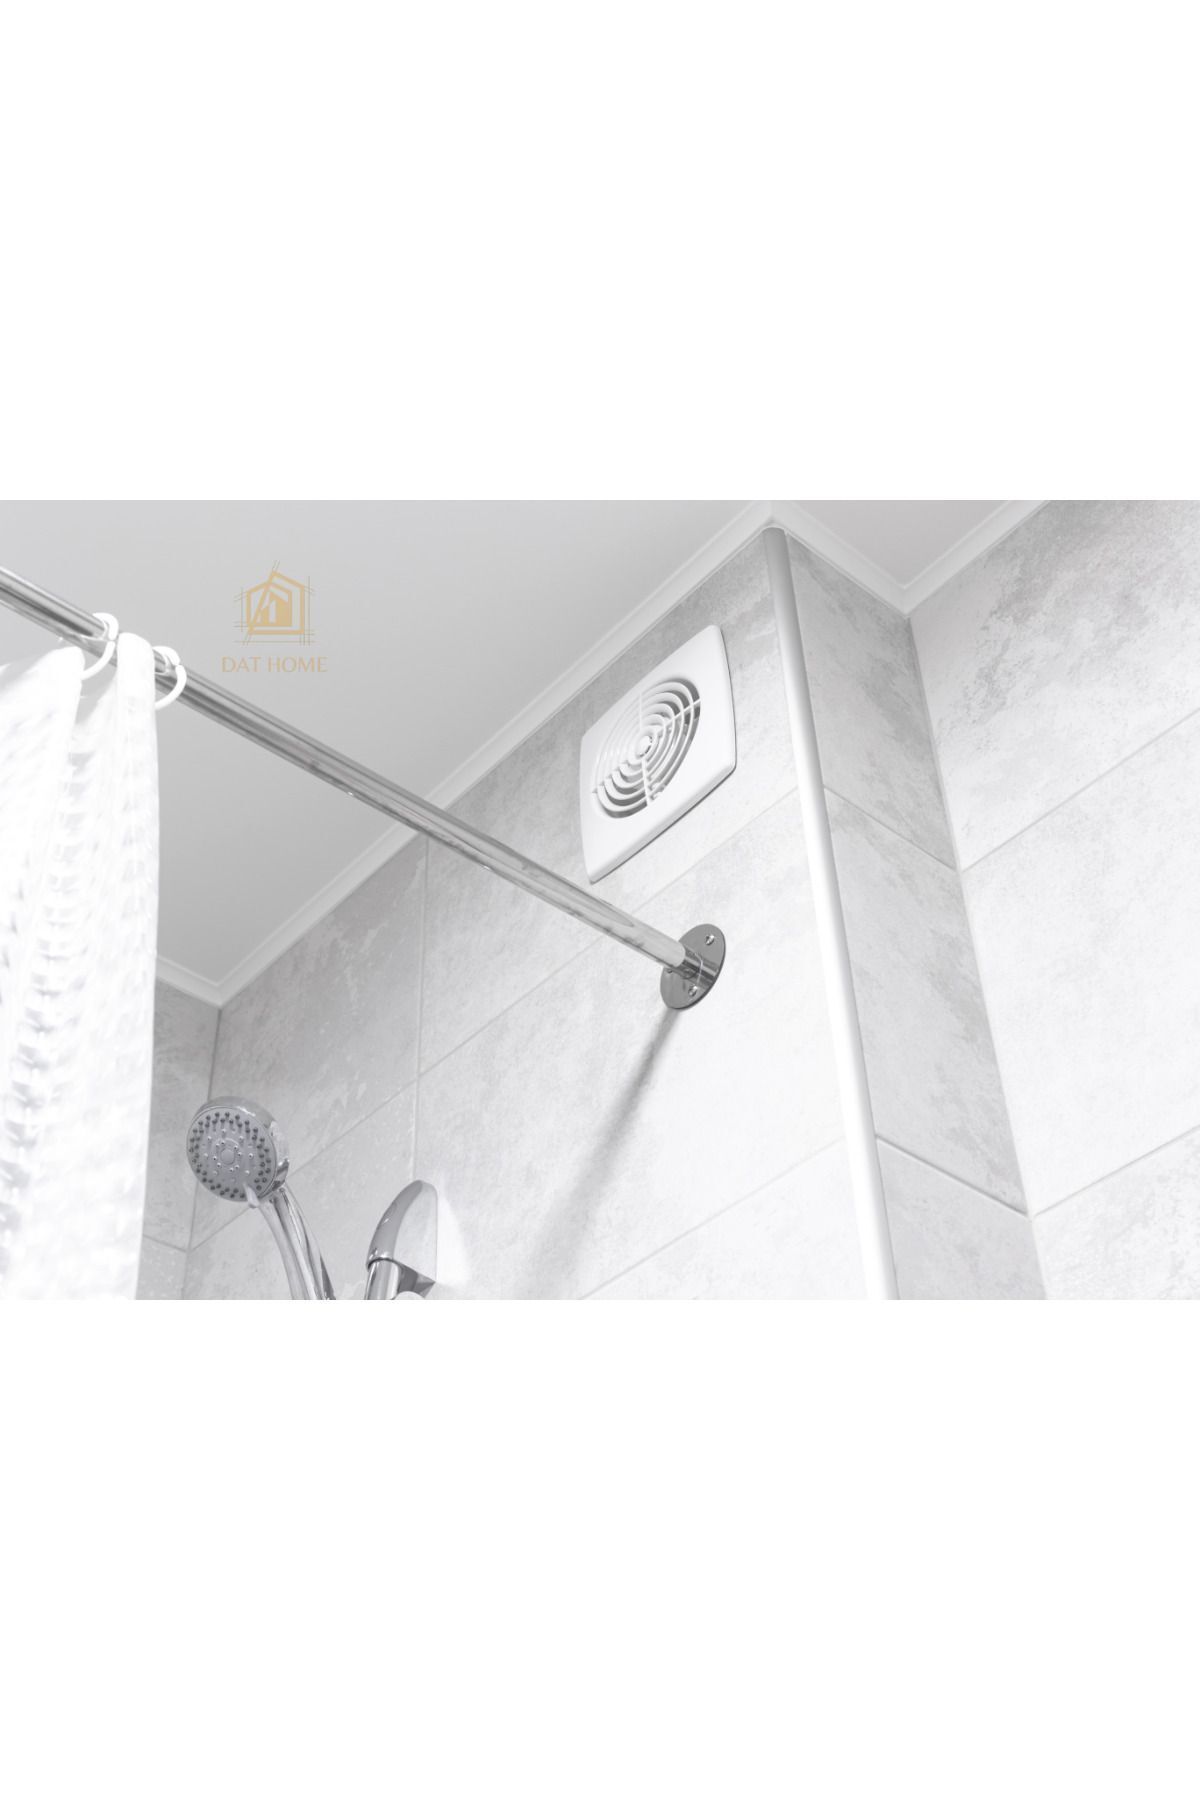 Genel Markalar 150'Lİk Banyo Tuvalet Mutfak Aspiratörü, Elektrikli Havalandırma Fanı 15 Cm Çap